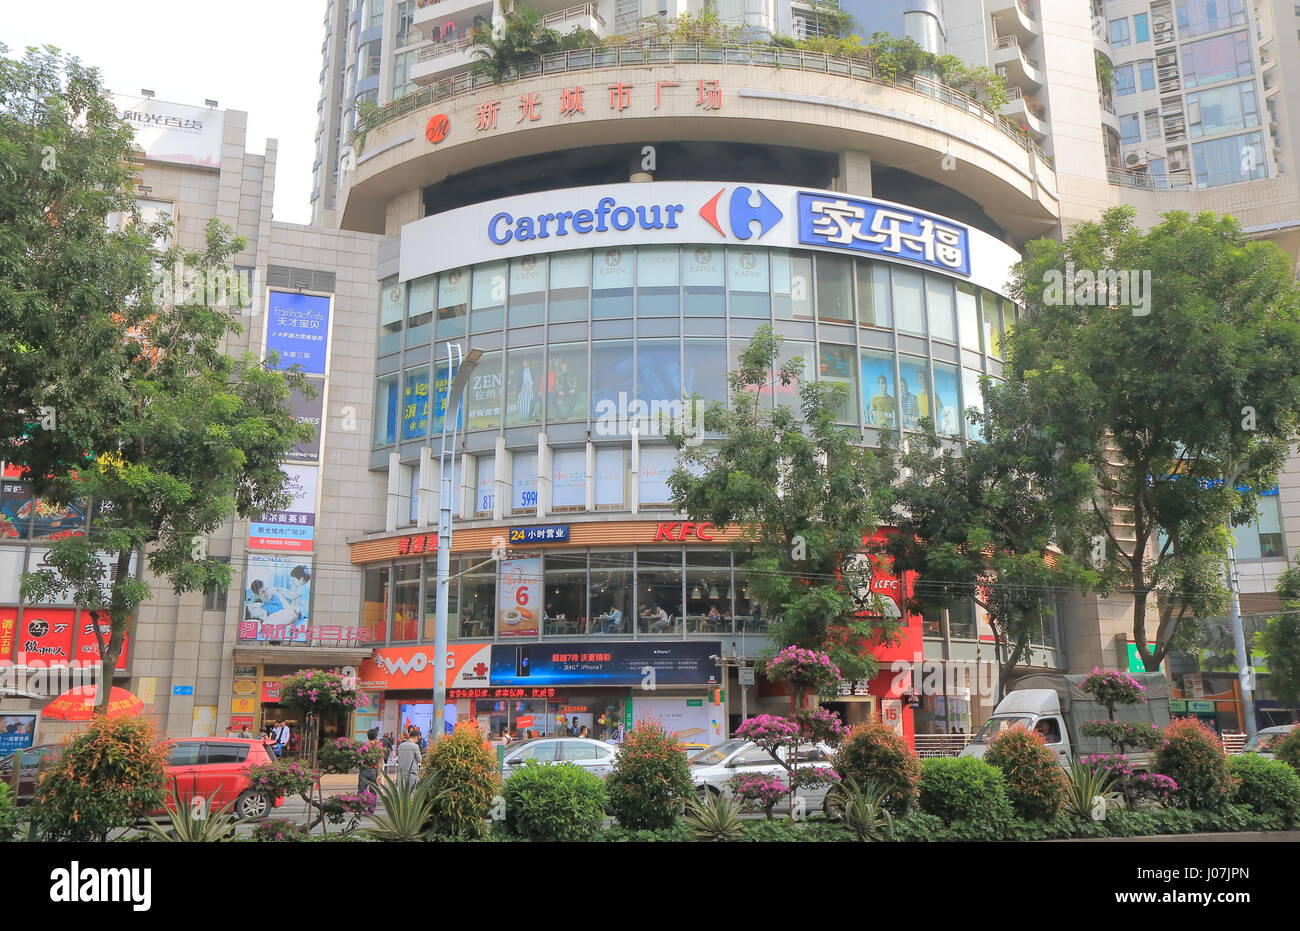 Carrefour à Guangzhou en Chine. Carrefour est une multinationale française hyper marché détaillant opearating dans plus de 30 pays ayant leur siège en France. Banque D'Images